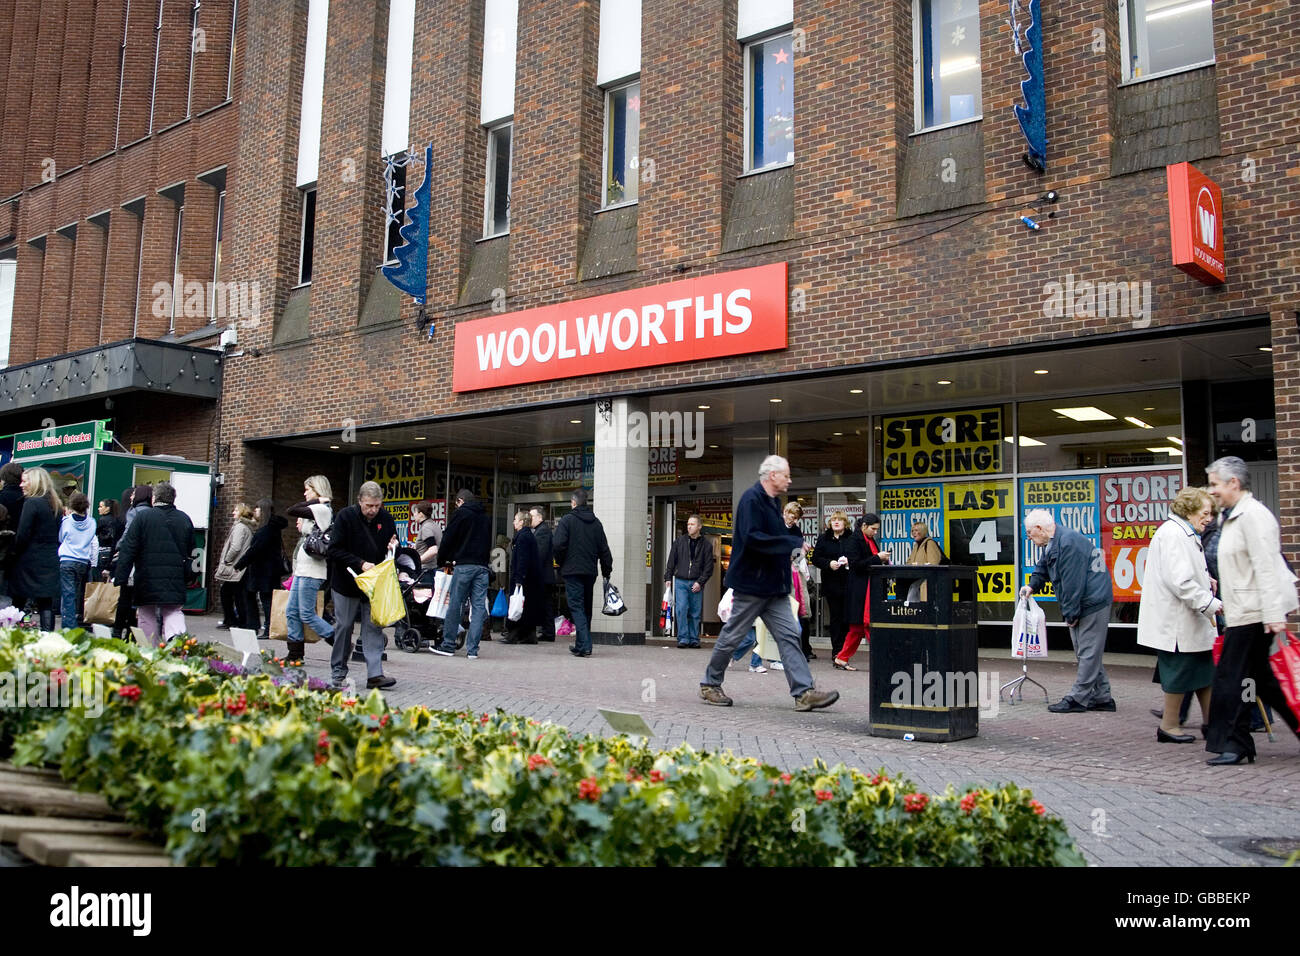 Vue générale de l'avant d'un magasin Woolworths à Hanley, Stoke-on-Trent, peu avant la fermeture. 7-9 marché supérieur Sq Stoke-on-Trent, ST1 1PY Banque D'Images